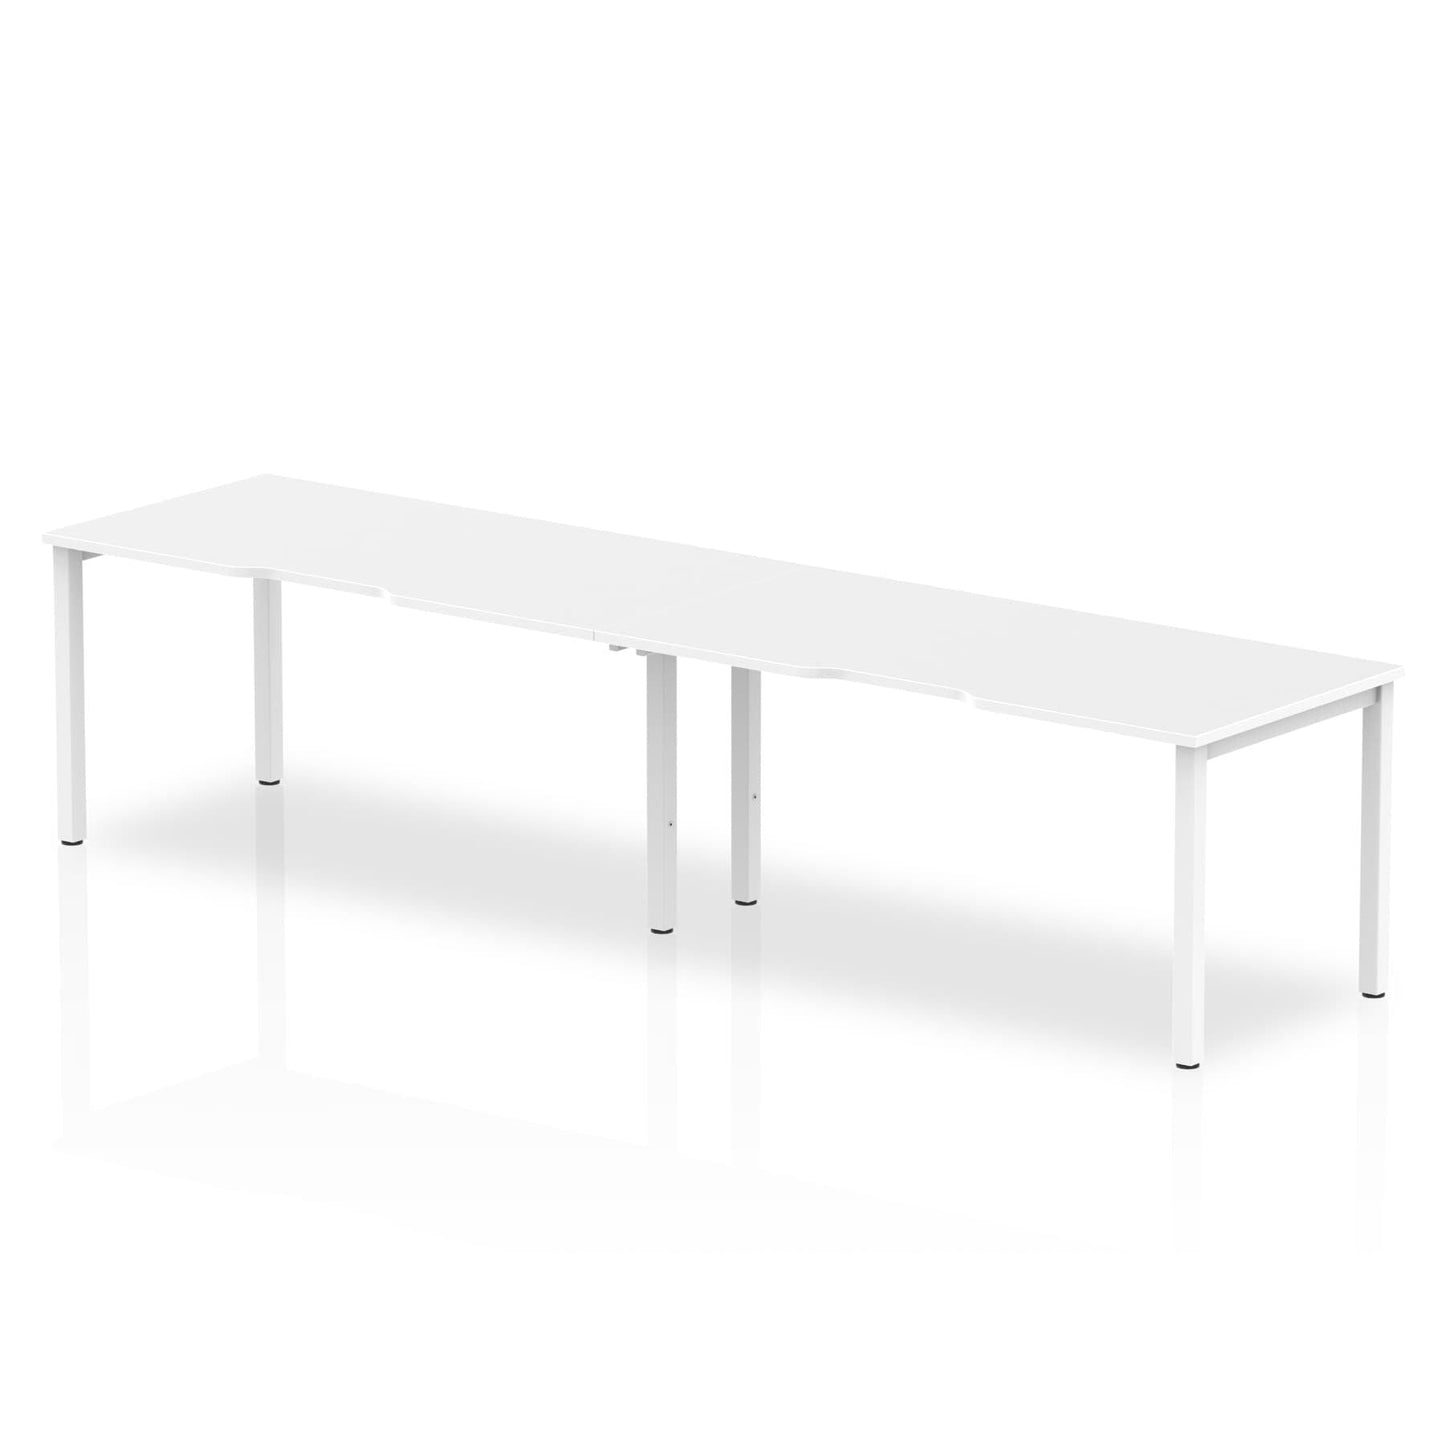 Evolve Plus Single Row Desk - 2 Person